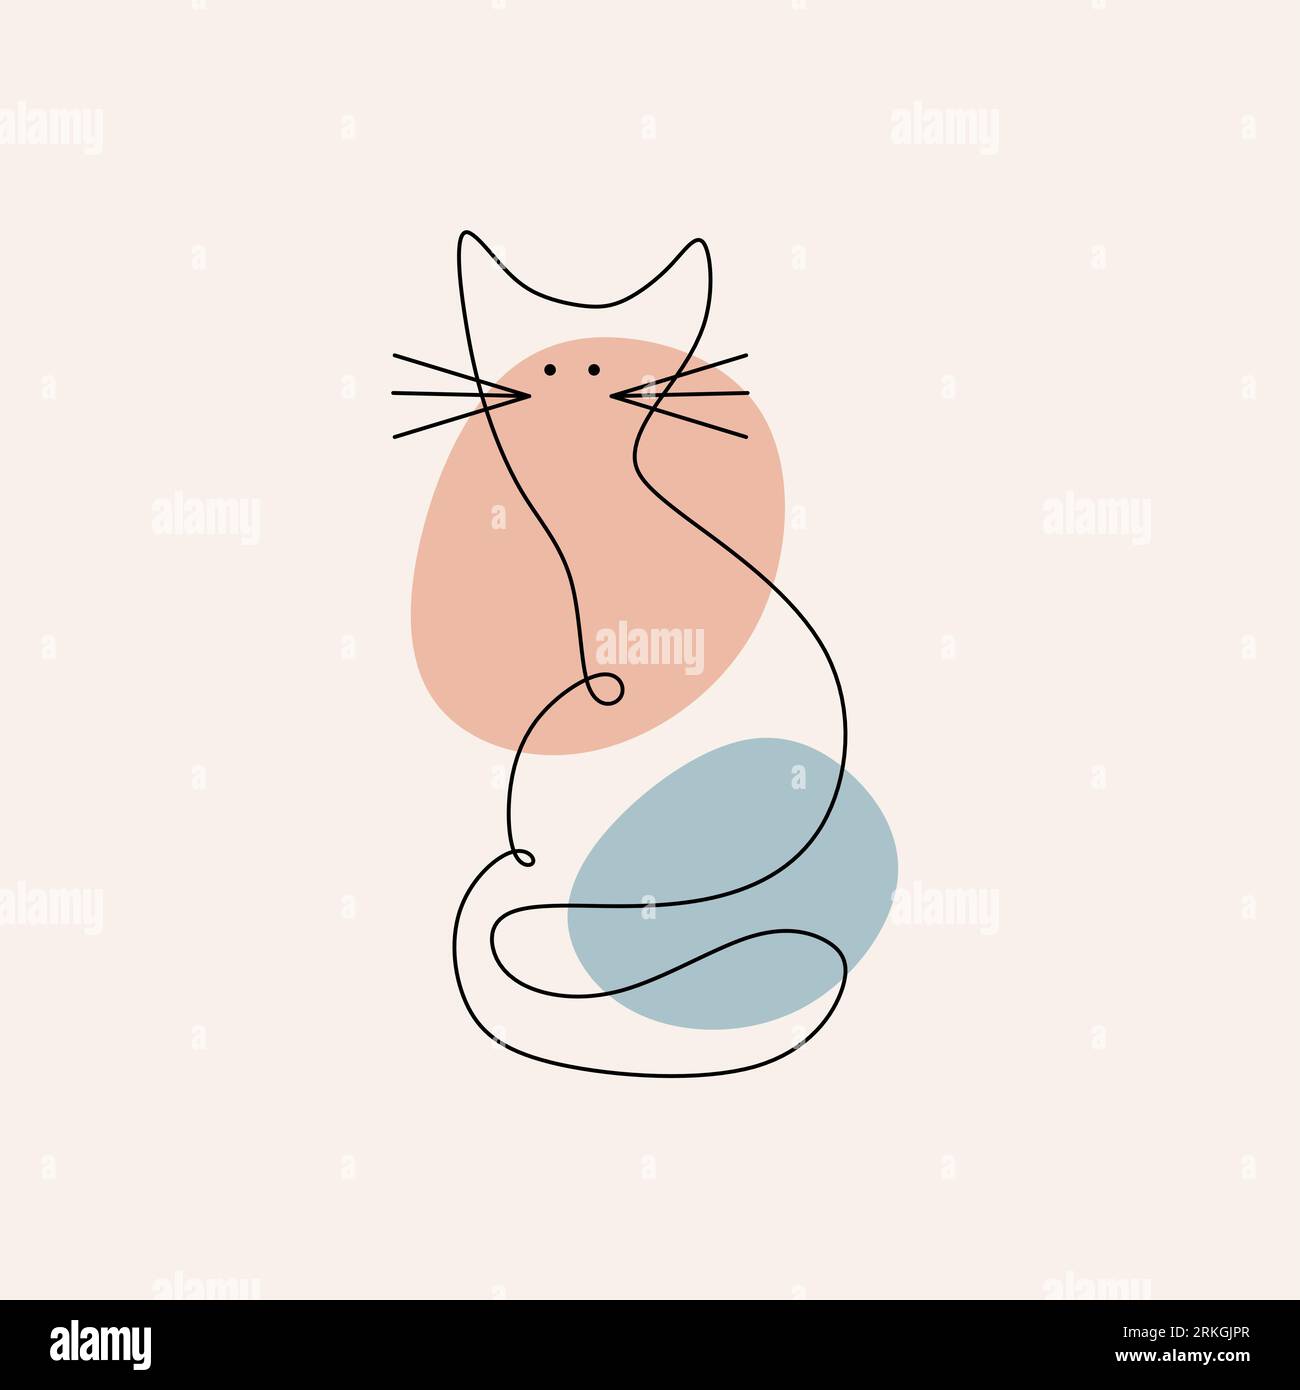 Dessin continu d'une ligne de chat abstrait en couleur bleue et rose. Chats minimalistes dans un style abstrait dessiné à la main, dessin minimaliste d'une ligne. Illustration de Vecteur